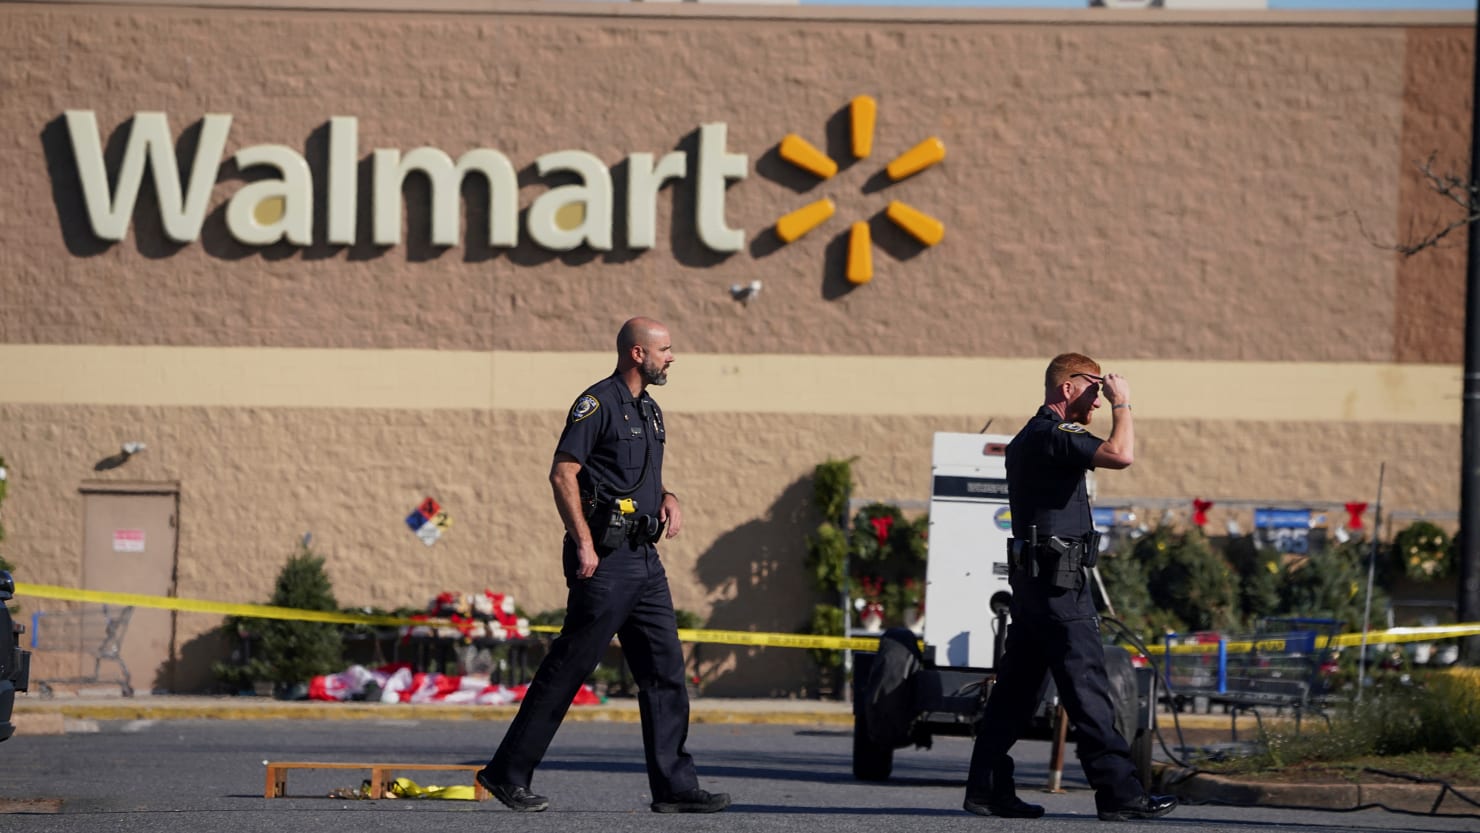 Le tireur de Walmart, Andre Bing, avait un manifeste sur son téléphone, selon un rapport